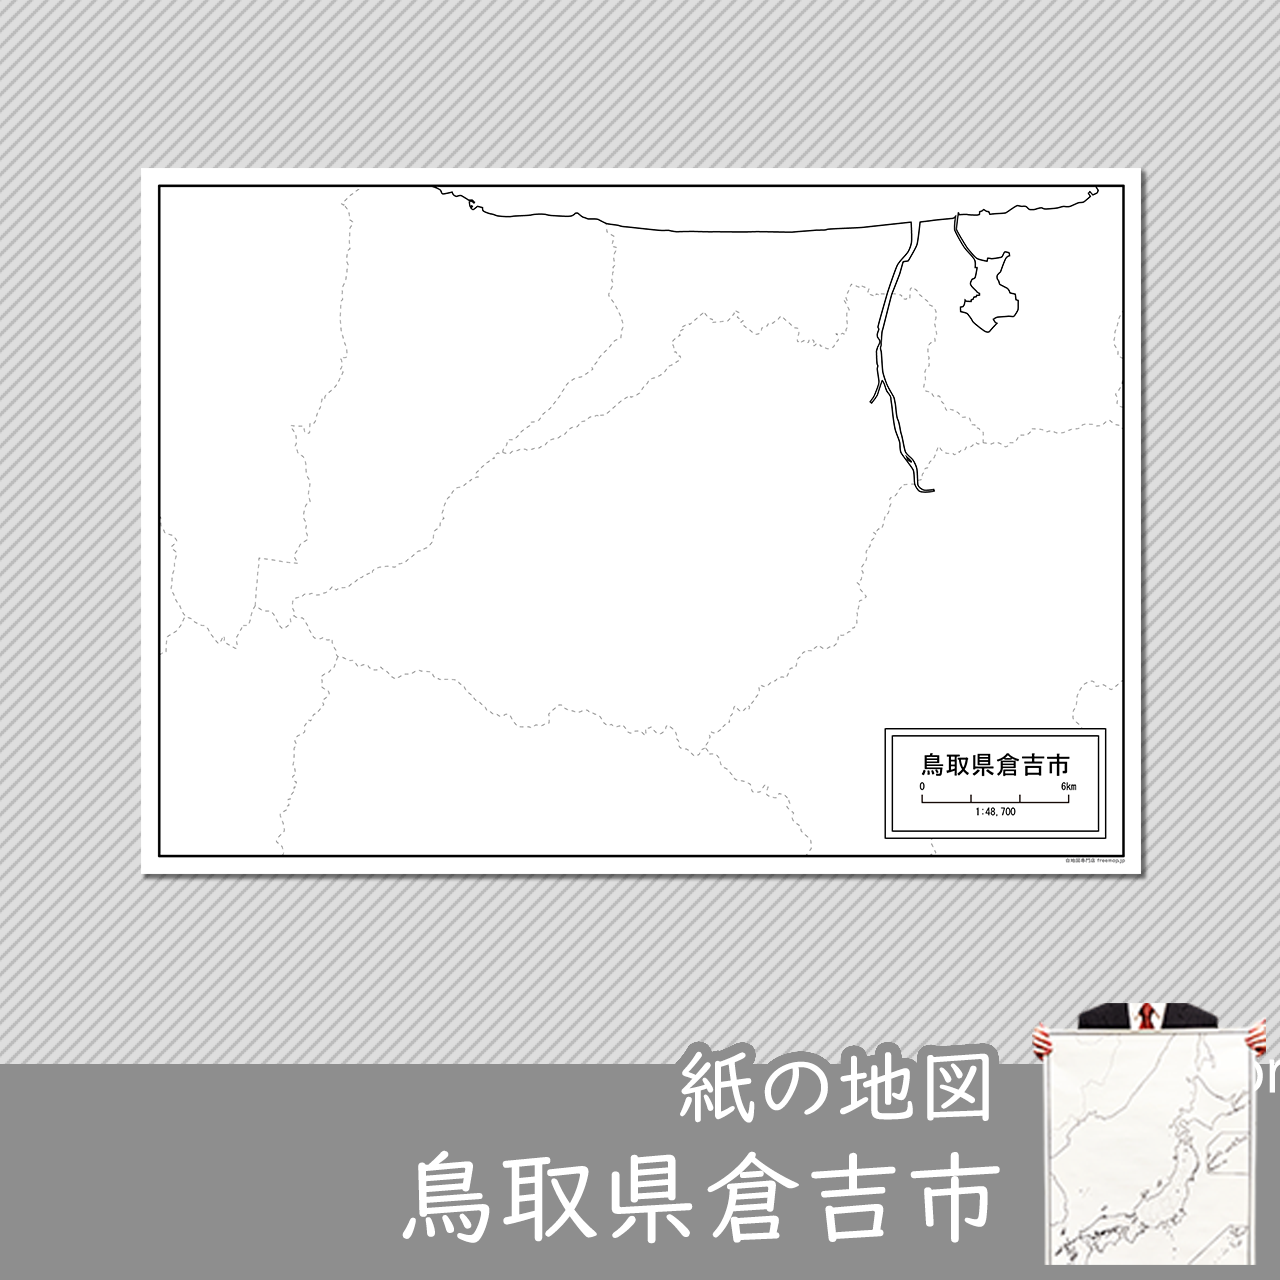 倉吉市の紙の白地図のサムネイル